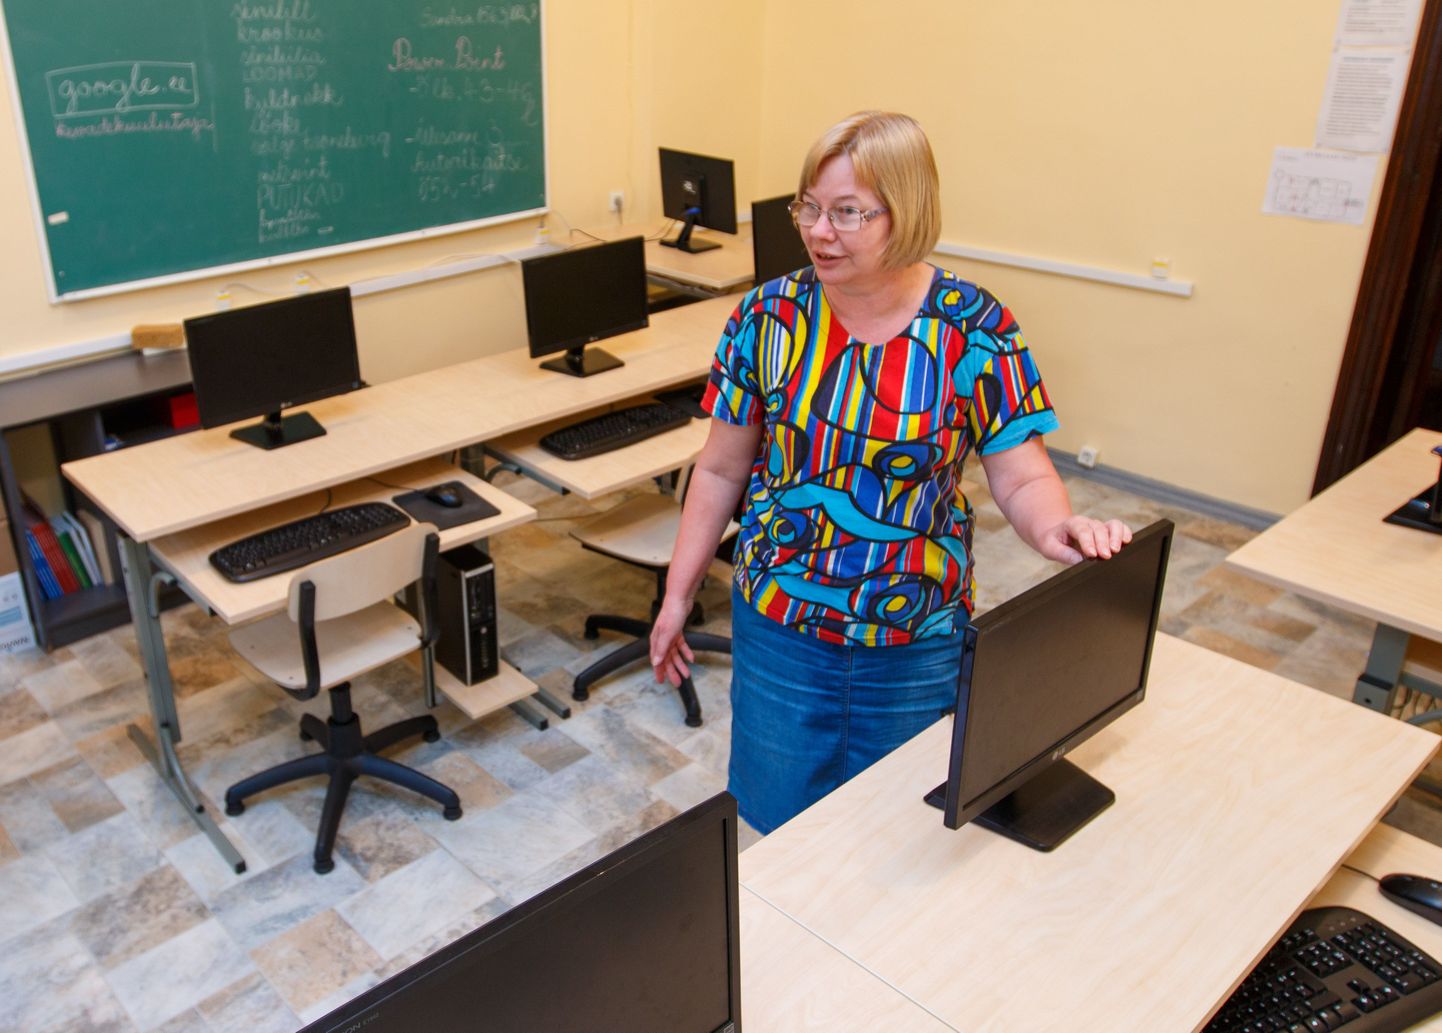 Hummuli põhikooli arvutiõpetaja Janika Kase tunneb heameelt, et klassi paigaldati uued arvutid ning kool sai kiire internetiühenduse, mis teeb õppetundide läbiviimise õpetajatele lihtsamaks ja lastele põnevamaks. Klassis on kümme arvutikohta.